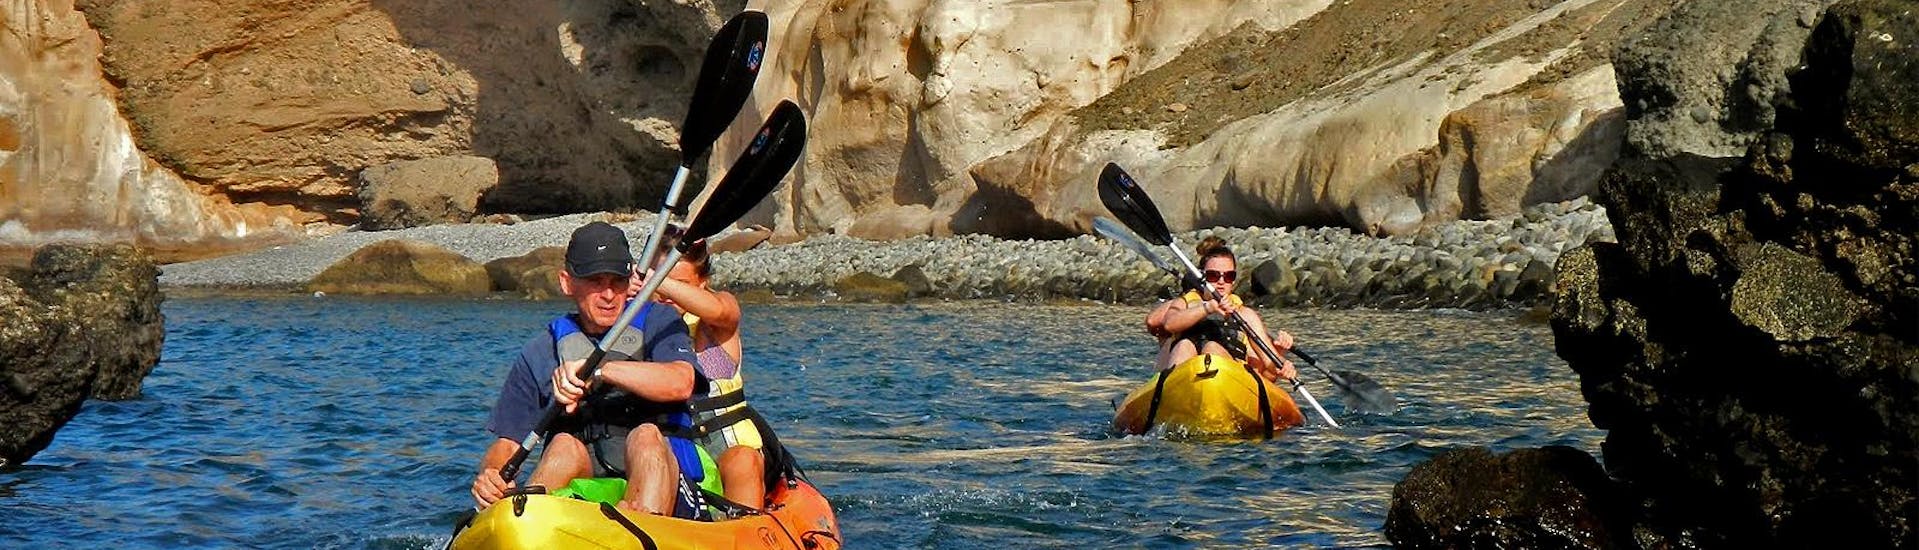 Während der Kajak Tour an der Südküste in Gran Canaria paddeln die Tourteilnehmer im wunderschönen Meer und bewundern dabei die Felsformationen gemeinsam mit Mojo Picón Aventura.